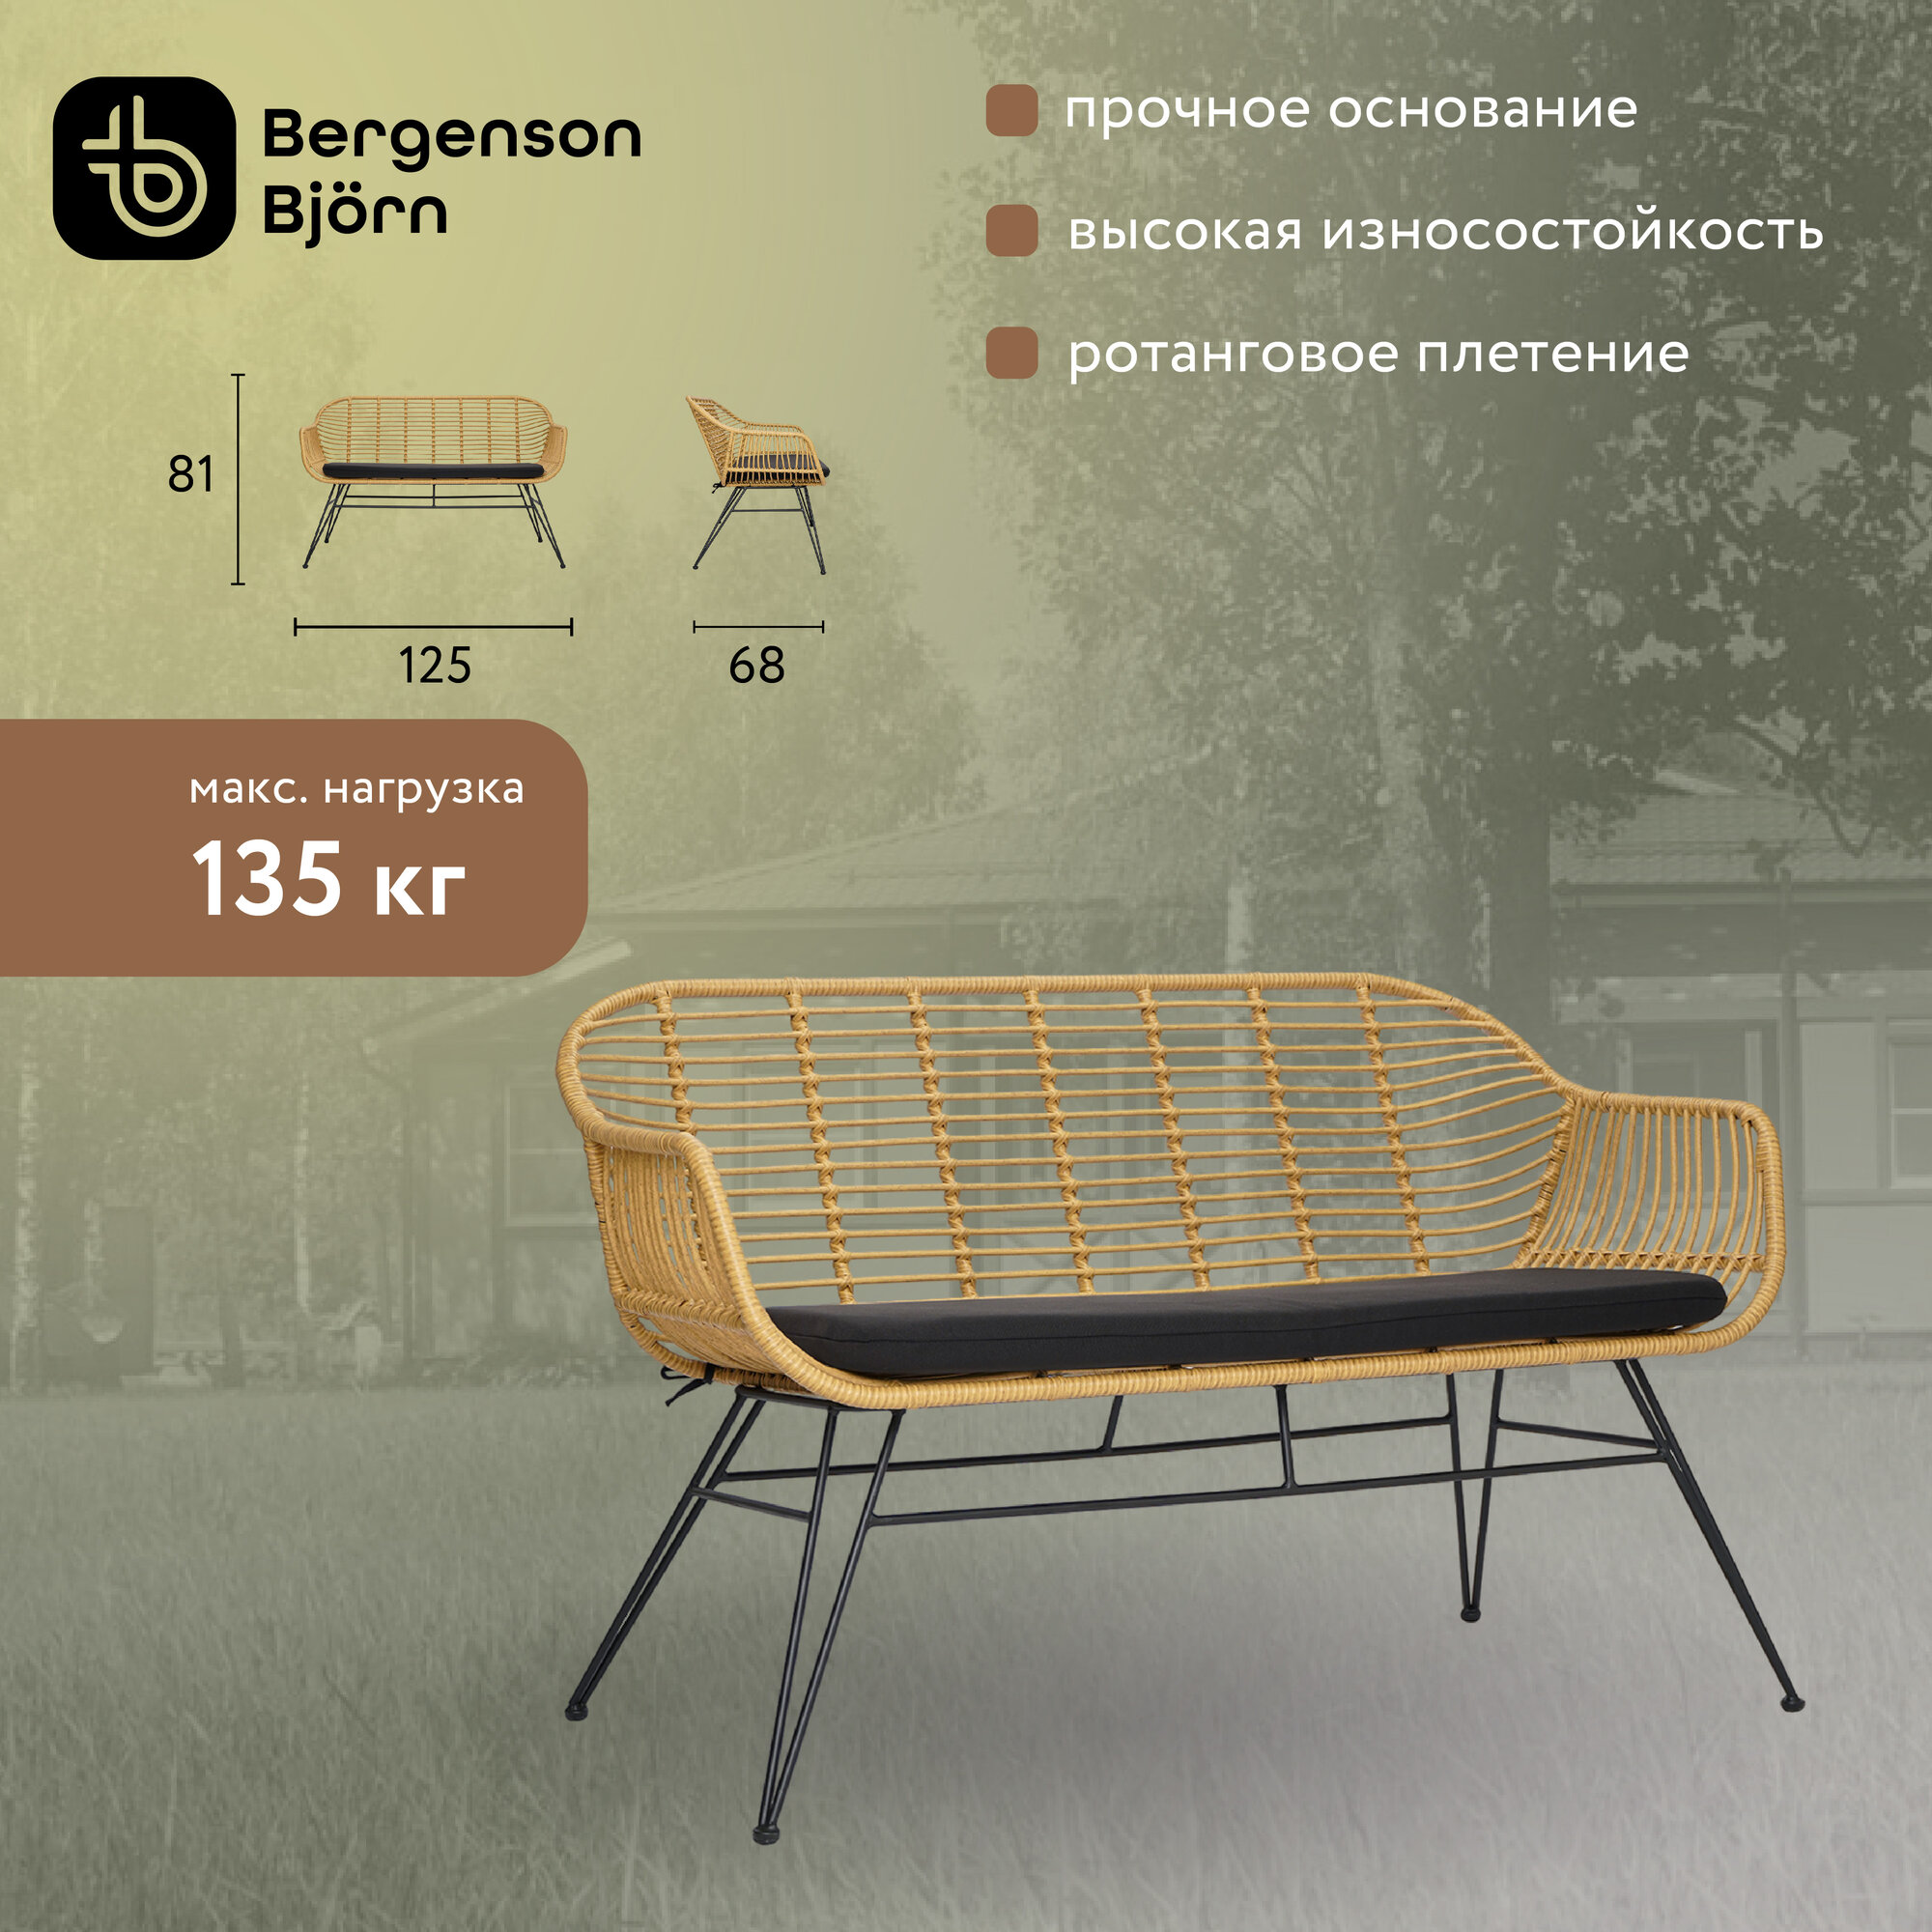 Кушетка Vetle Bent, 125х68 см, ротанг Bergenson Bjorn, BB0000480